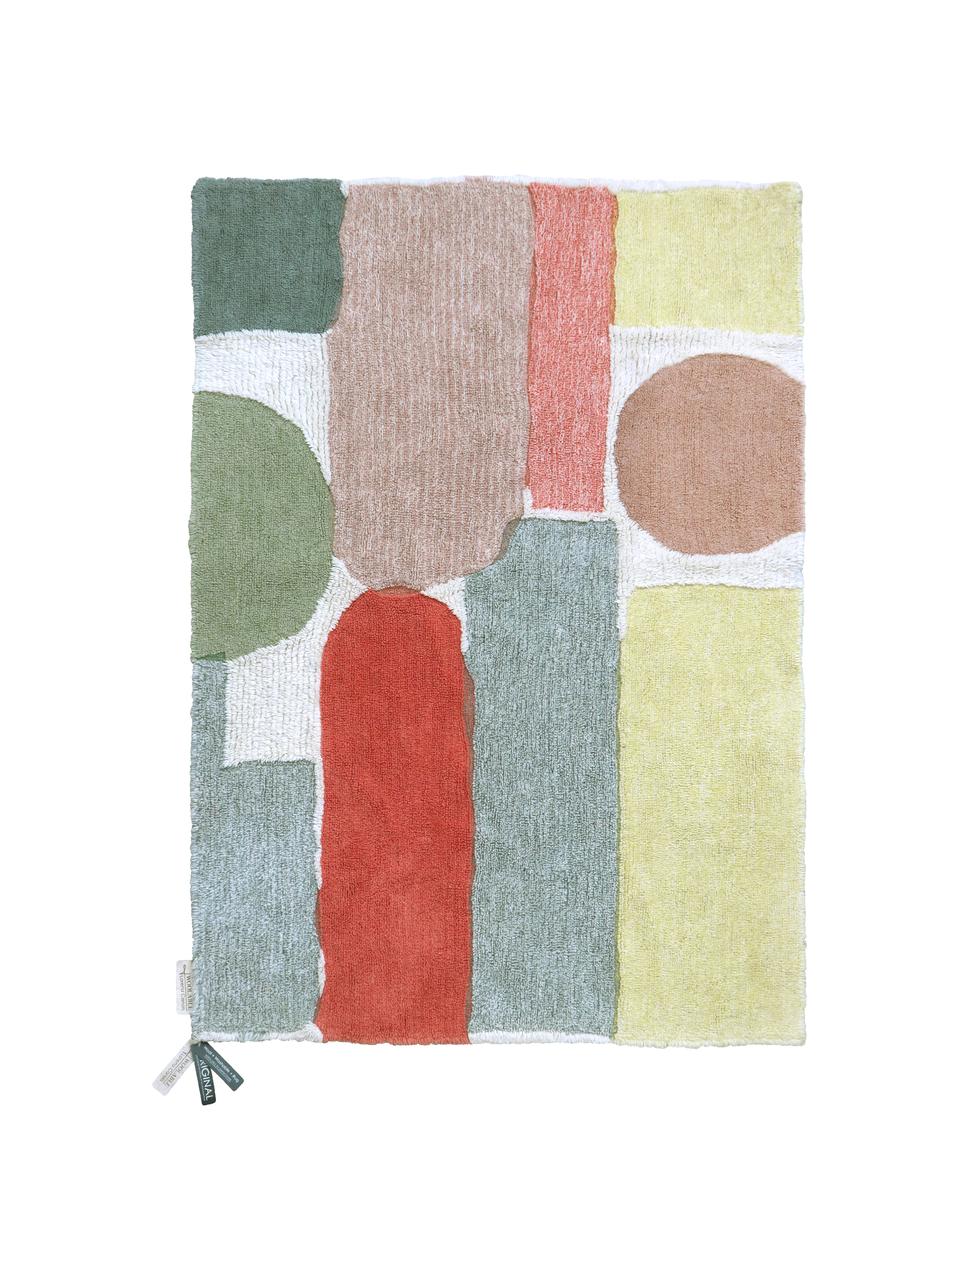 Großer Waschbarer Wollteppich Woolable Abstra mit buntem Muster, Flor: 100% Wolle, Mehrfarbig, B 170 x L 240 cm (Größe M)